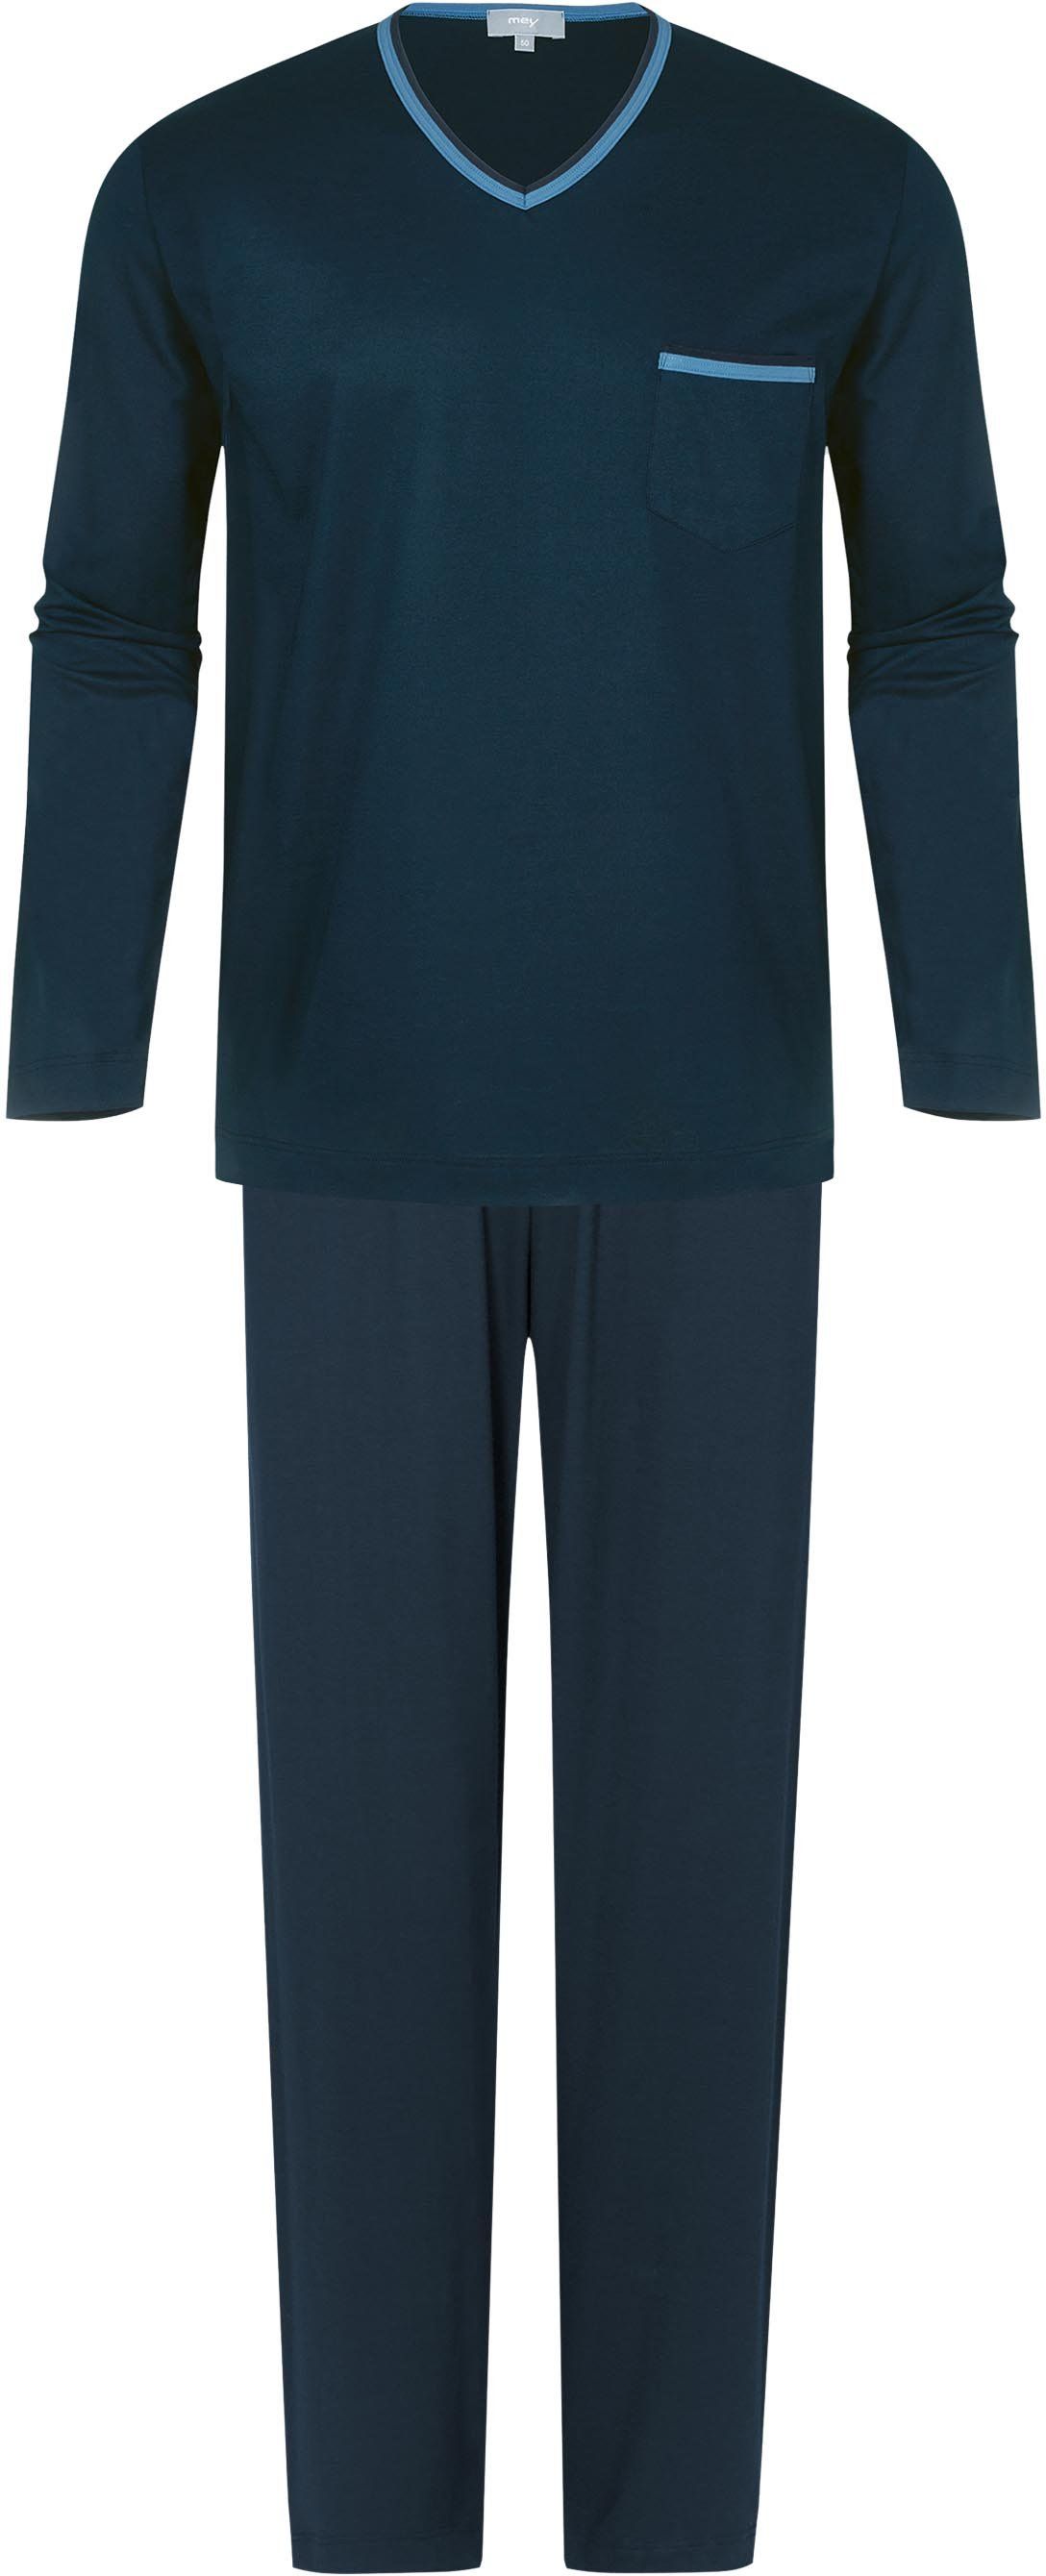 Mey Pyjama Long Foncé Bleu foncé Bleu taille 48